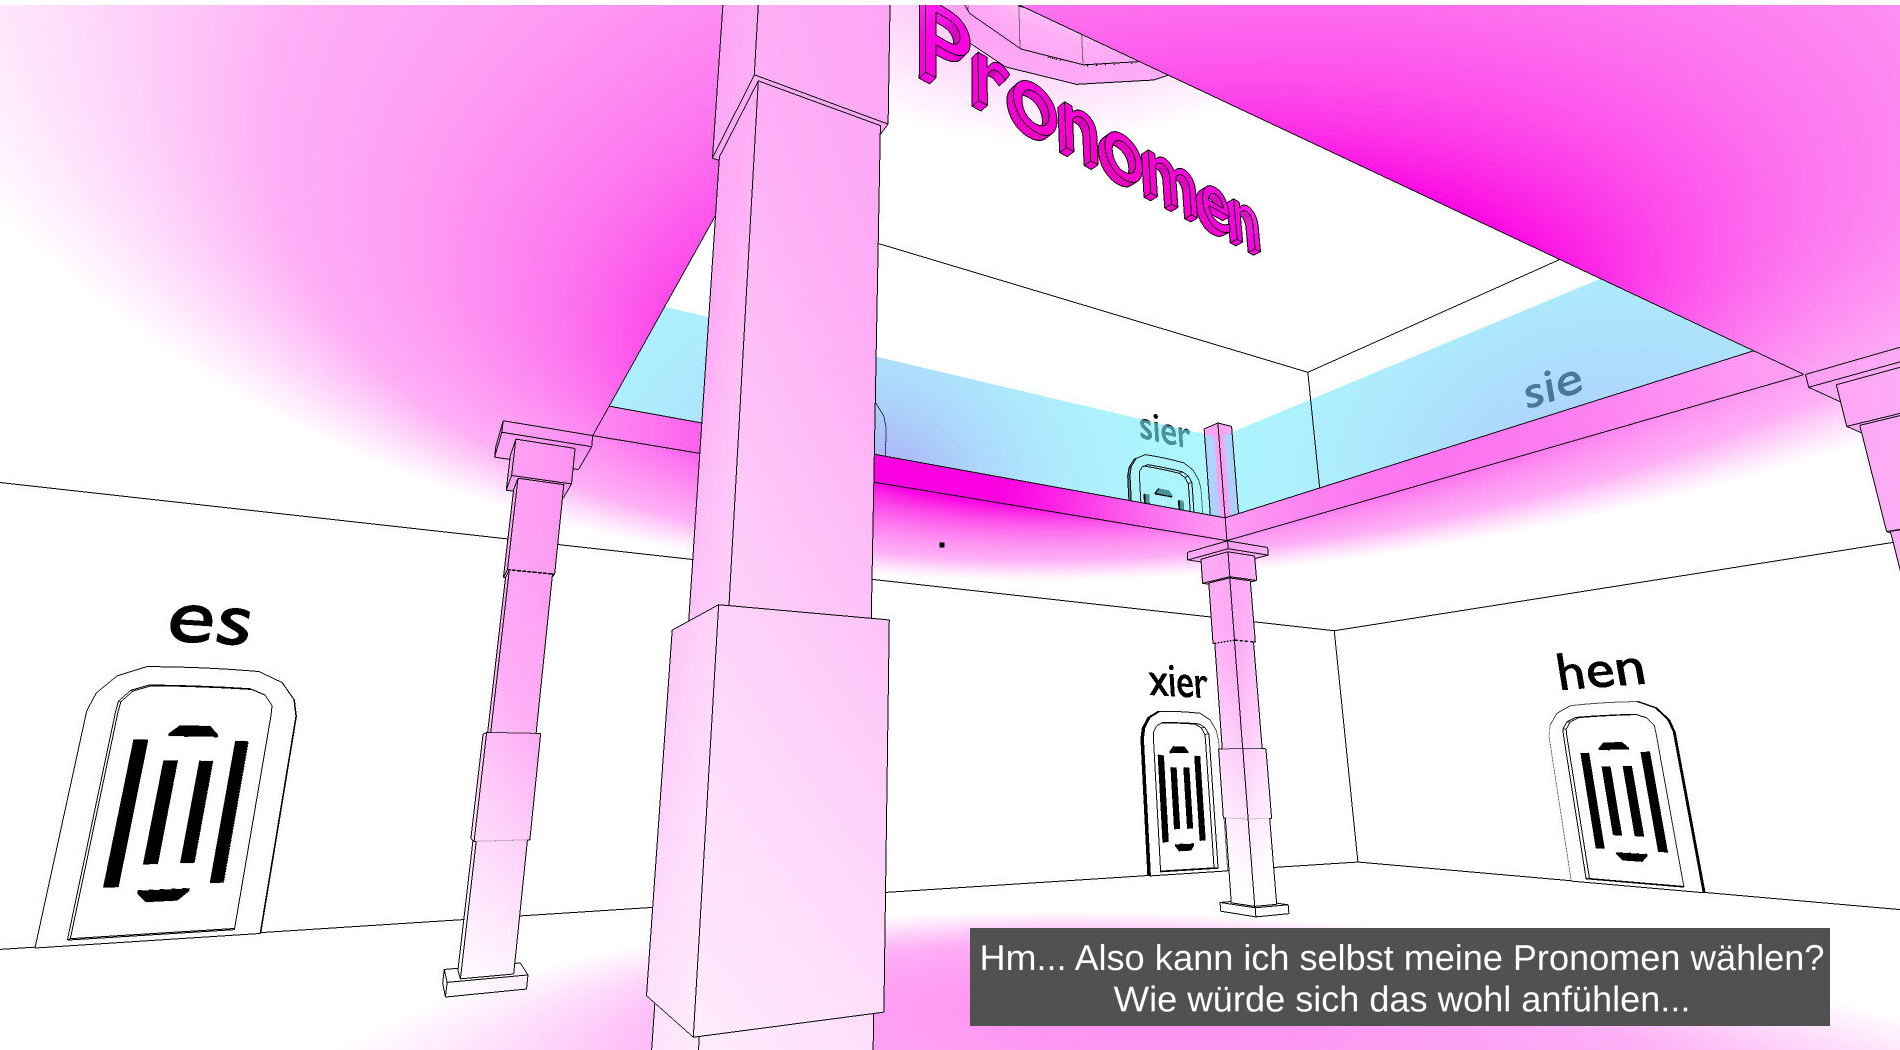 Screenshot aus dem Spiel. In einem geometrisch gezeichneten Treppehaus schwebt in pink das Wort 